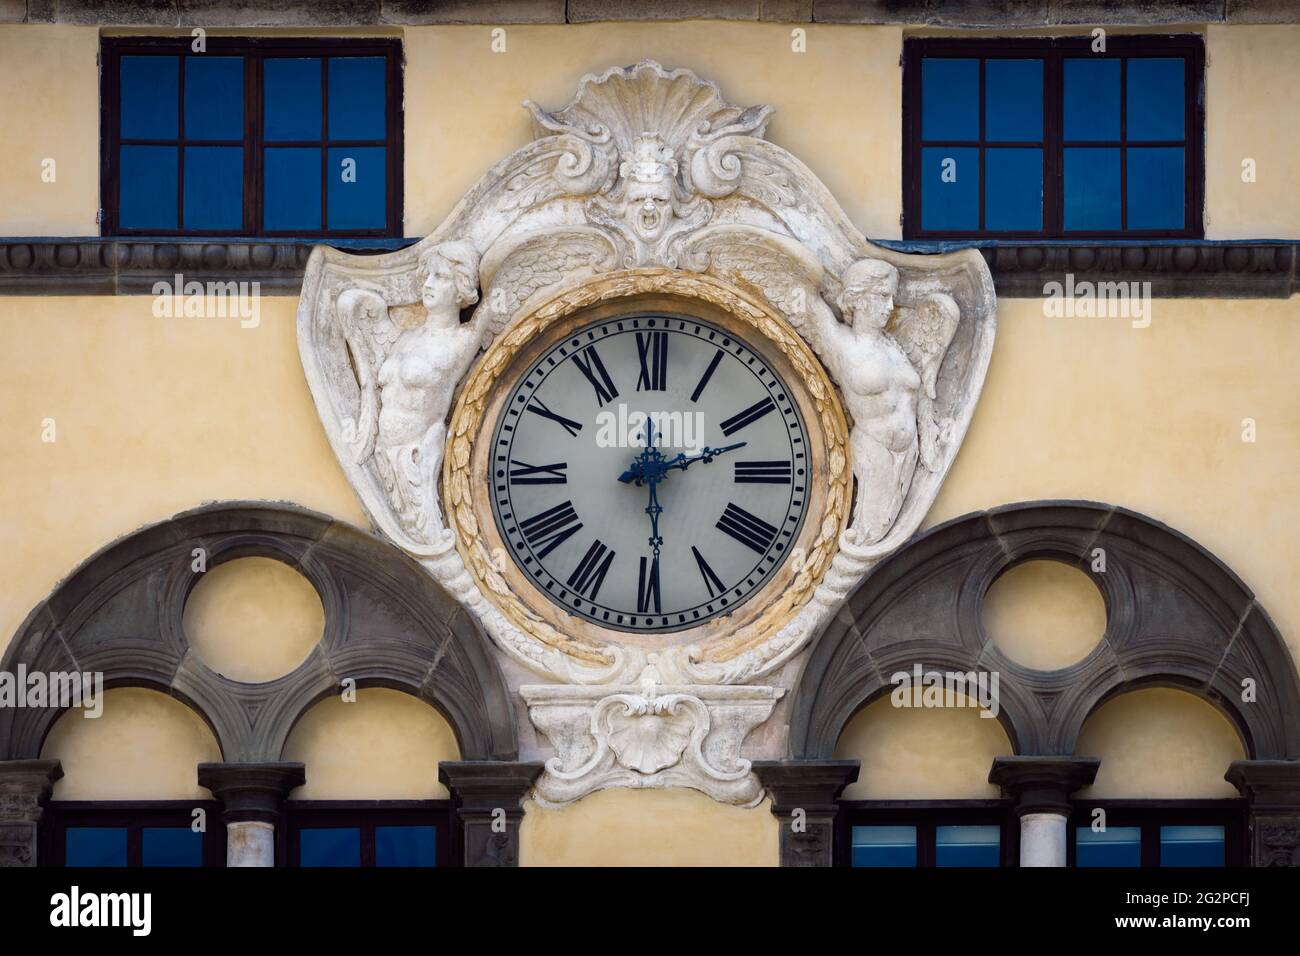 Particolare dell'antico orologio rinascimentale sulla facciata di palazzo pretorio, edificio storico in piazza San Michele, piazza principale della città di Lucca Foto Stock